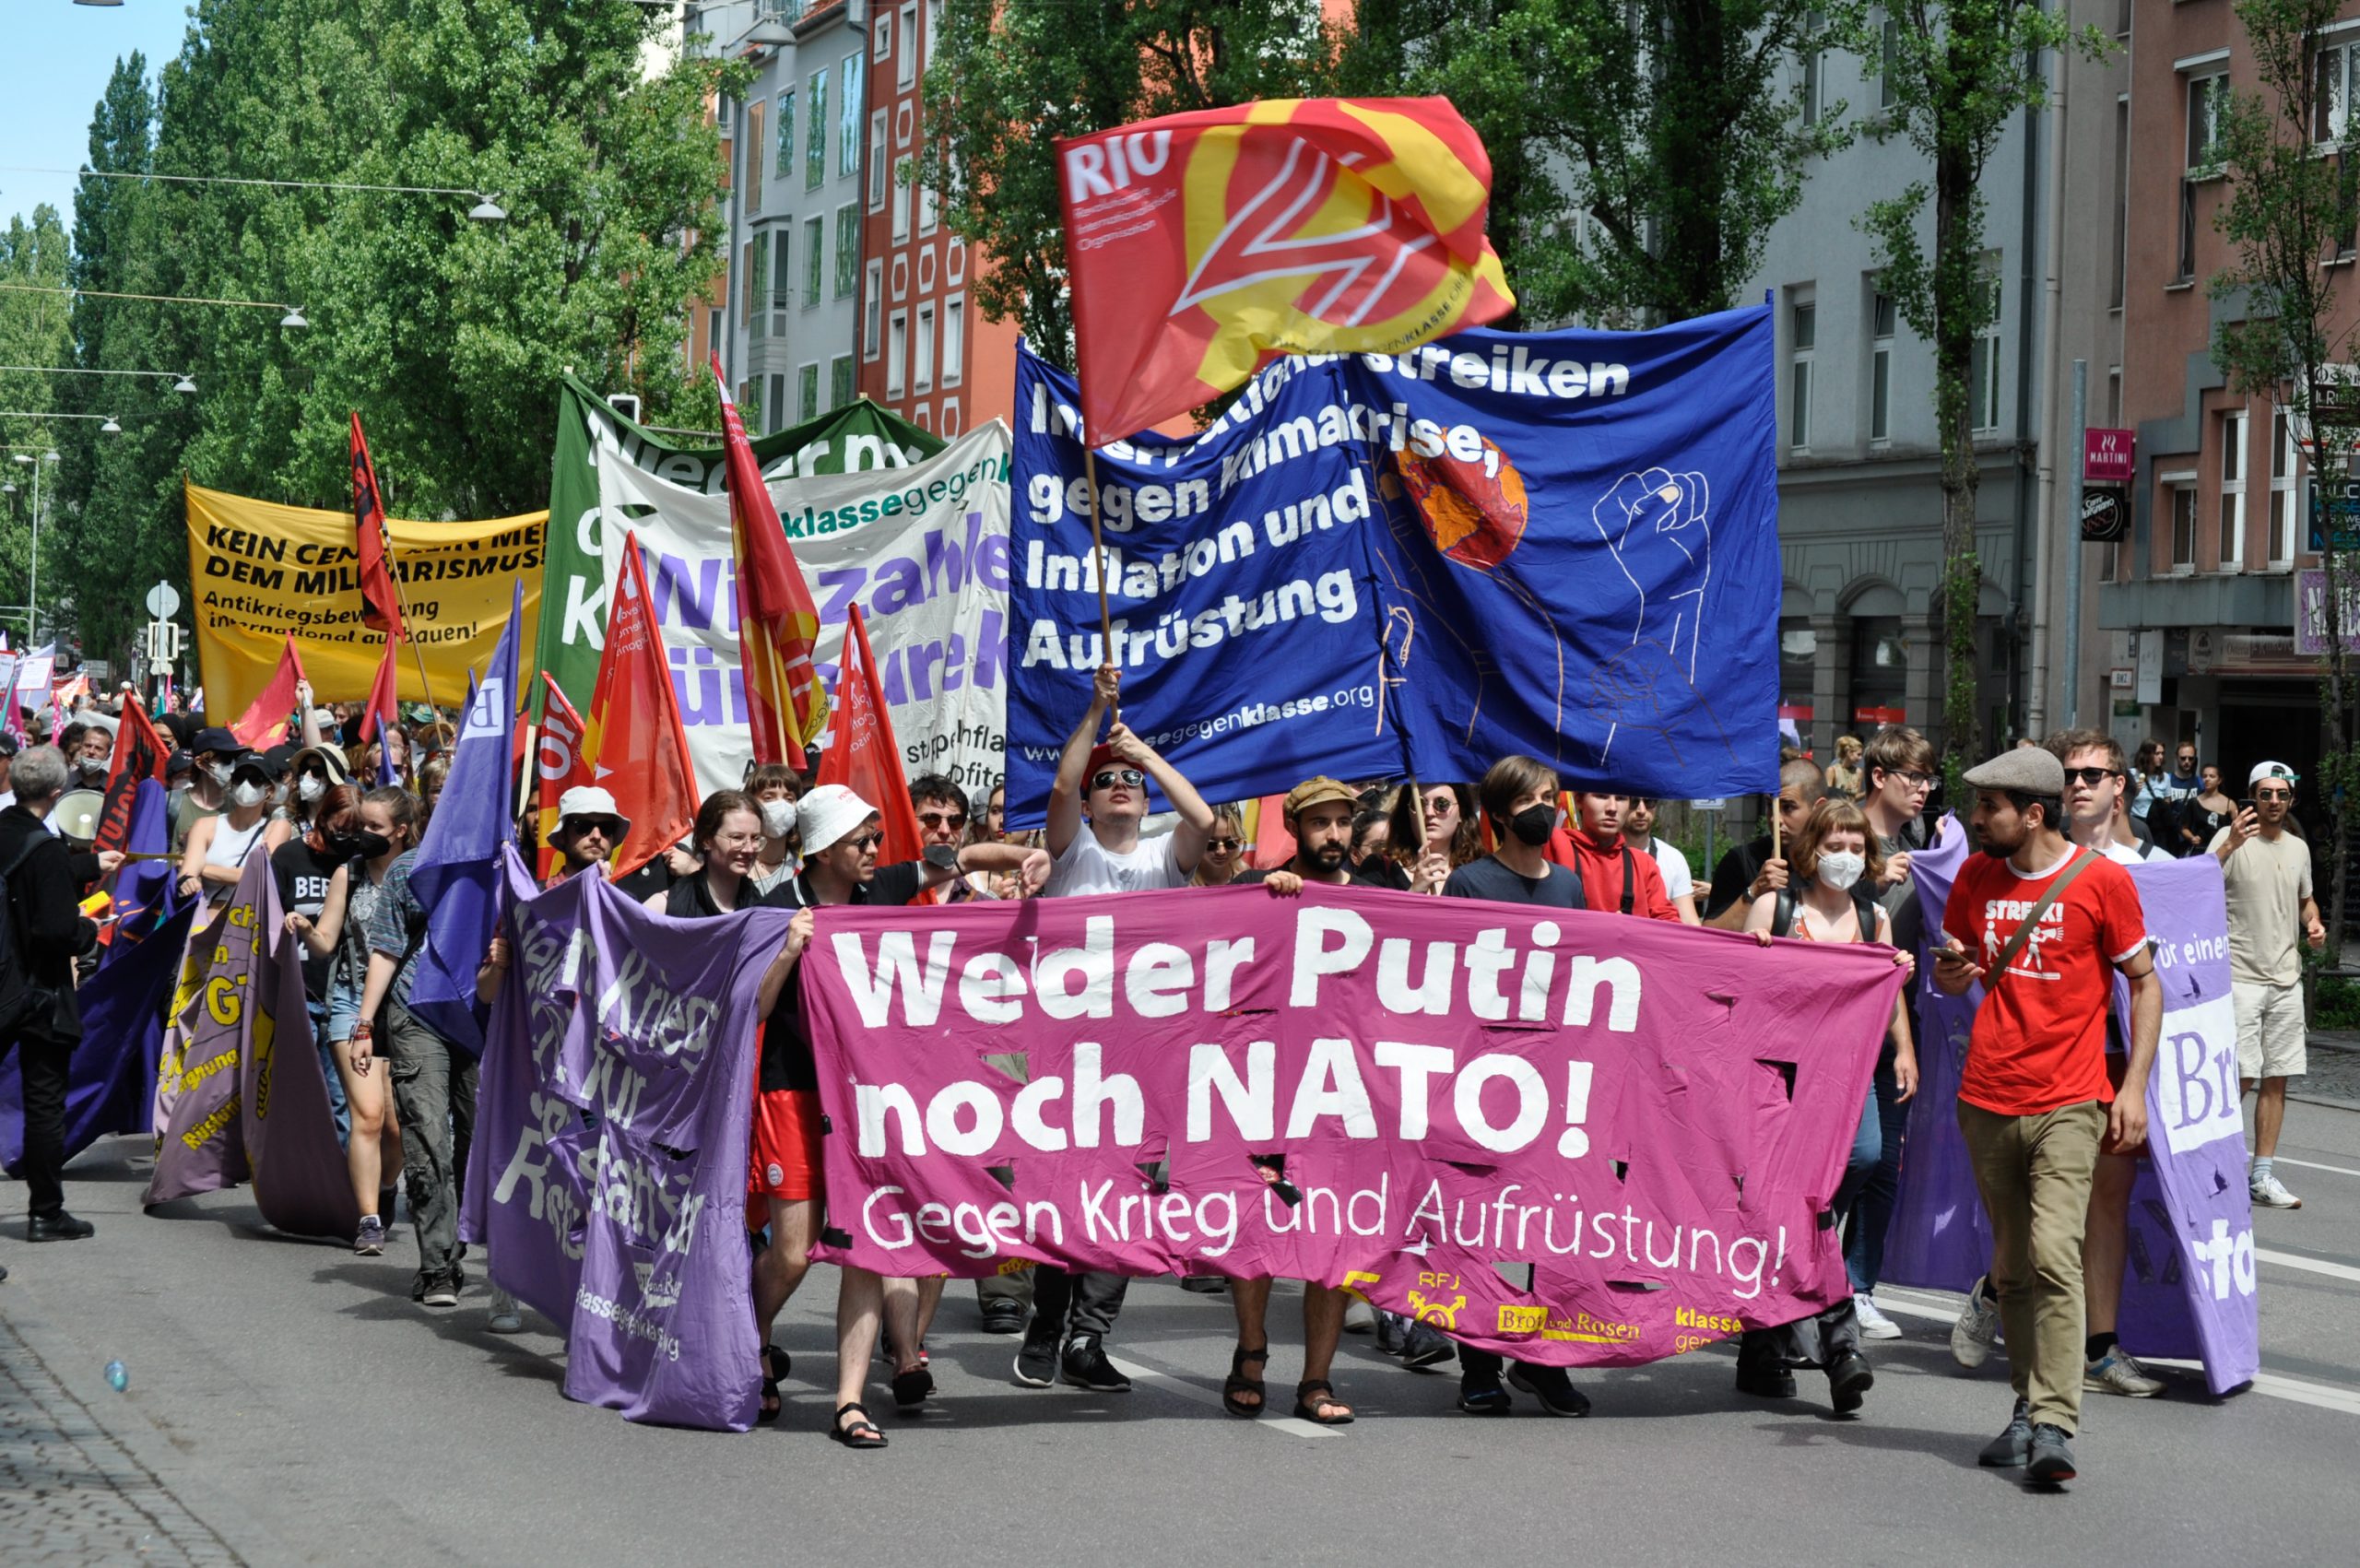 2. Juli in Berlin: Weder NATO noch Putin! 100 Milliarden für Gesundheit, Klima und Soziales statt für Aufrüstung!